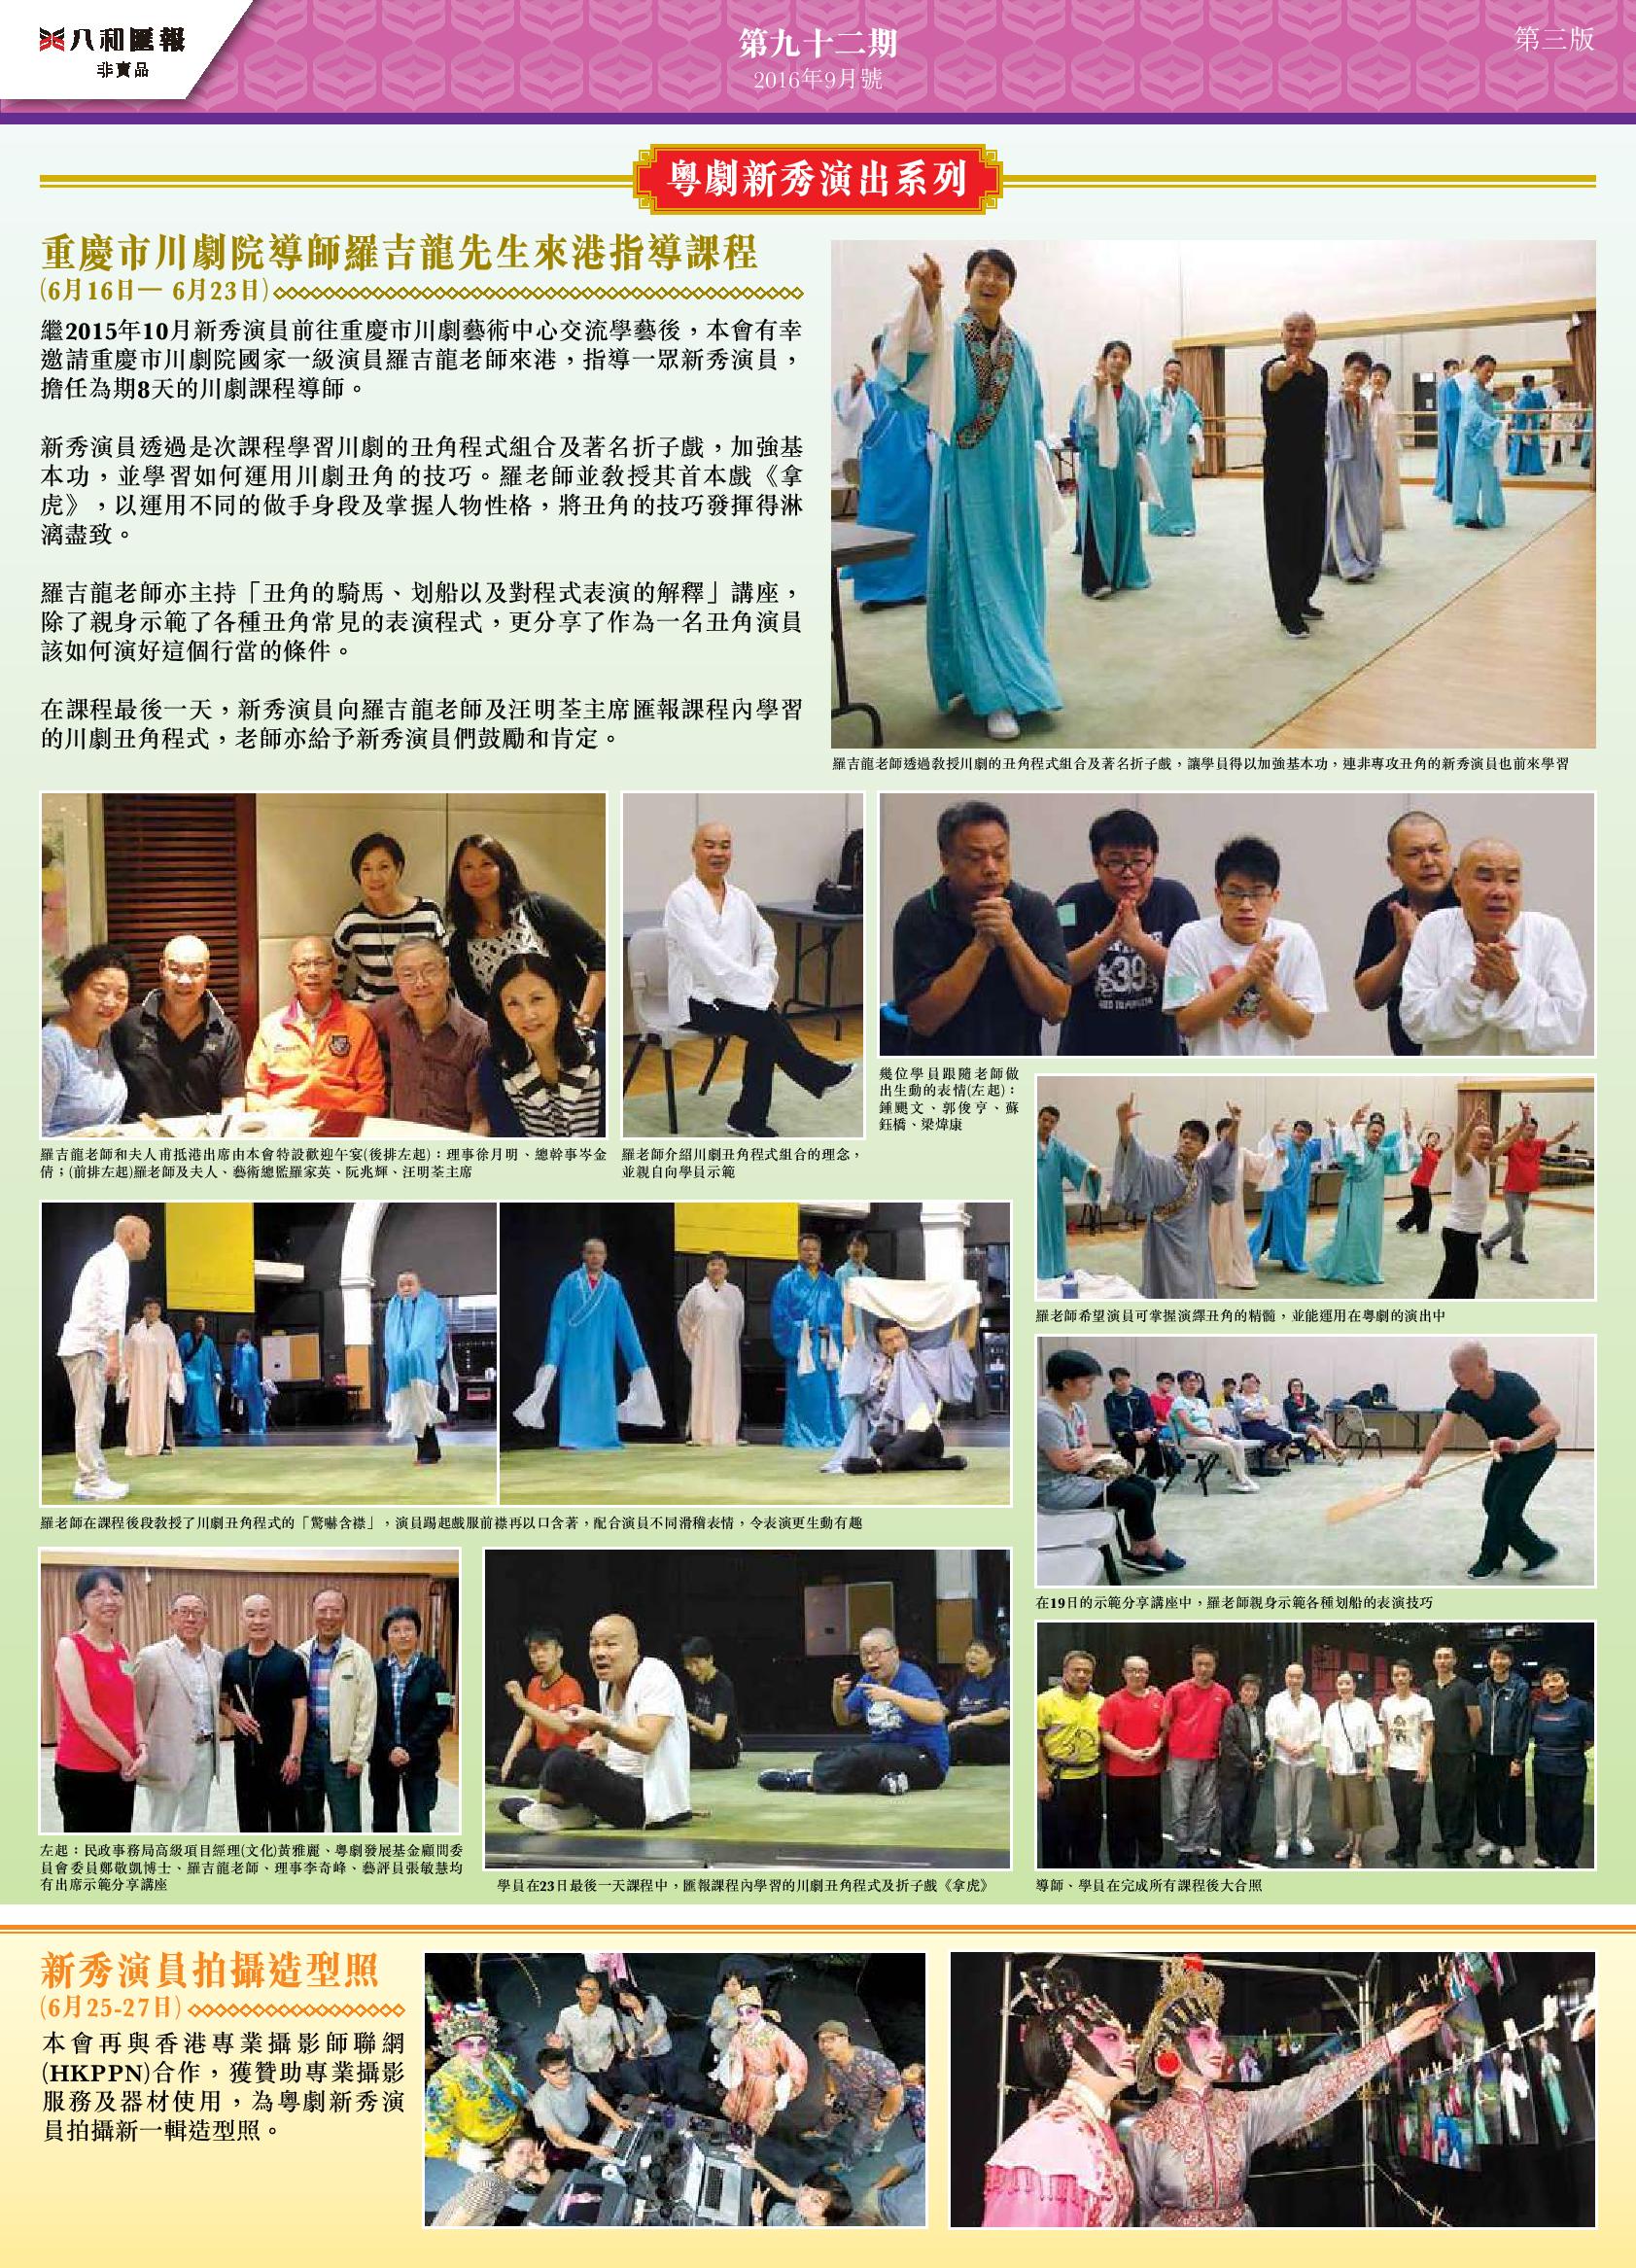 粵劇新秀演出系列：重慶市川劇院導師羅吉龍先生來港指導課程、新秀演員拍攝造型照